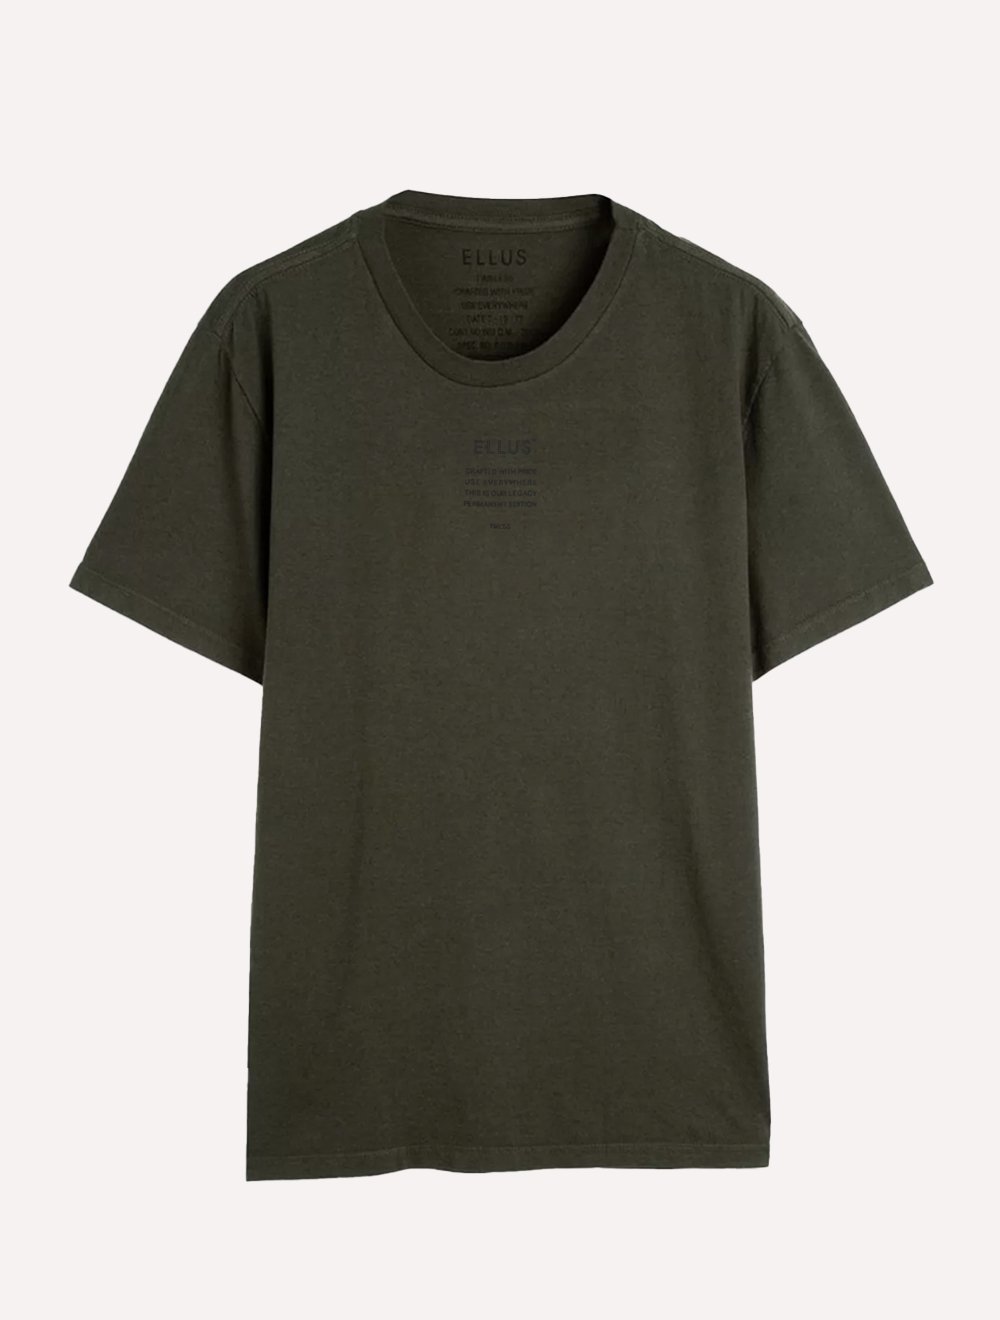 Camiseta Ellus Masculina Cotton Fine Timeless Classic Verde Militar